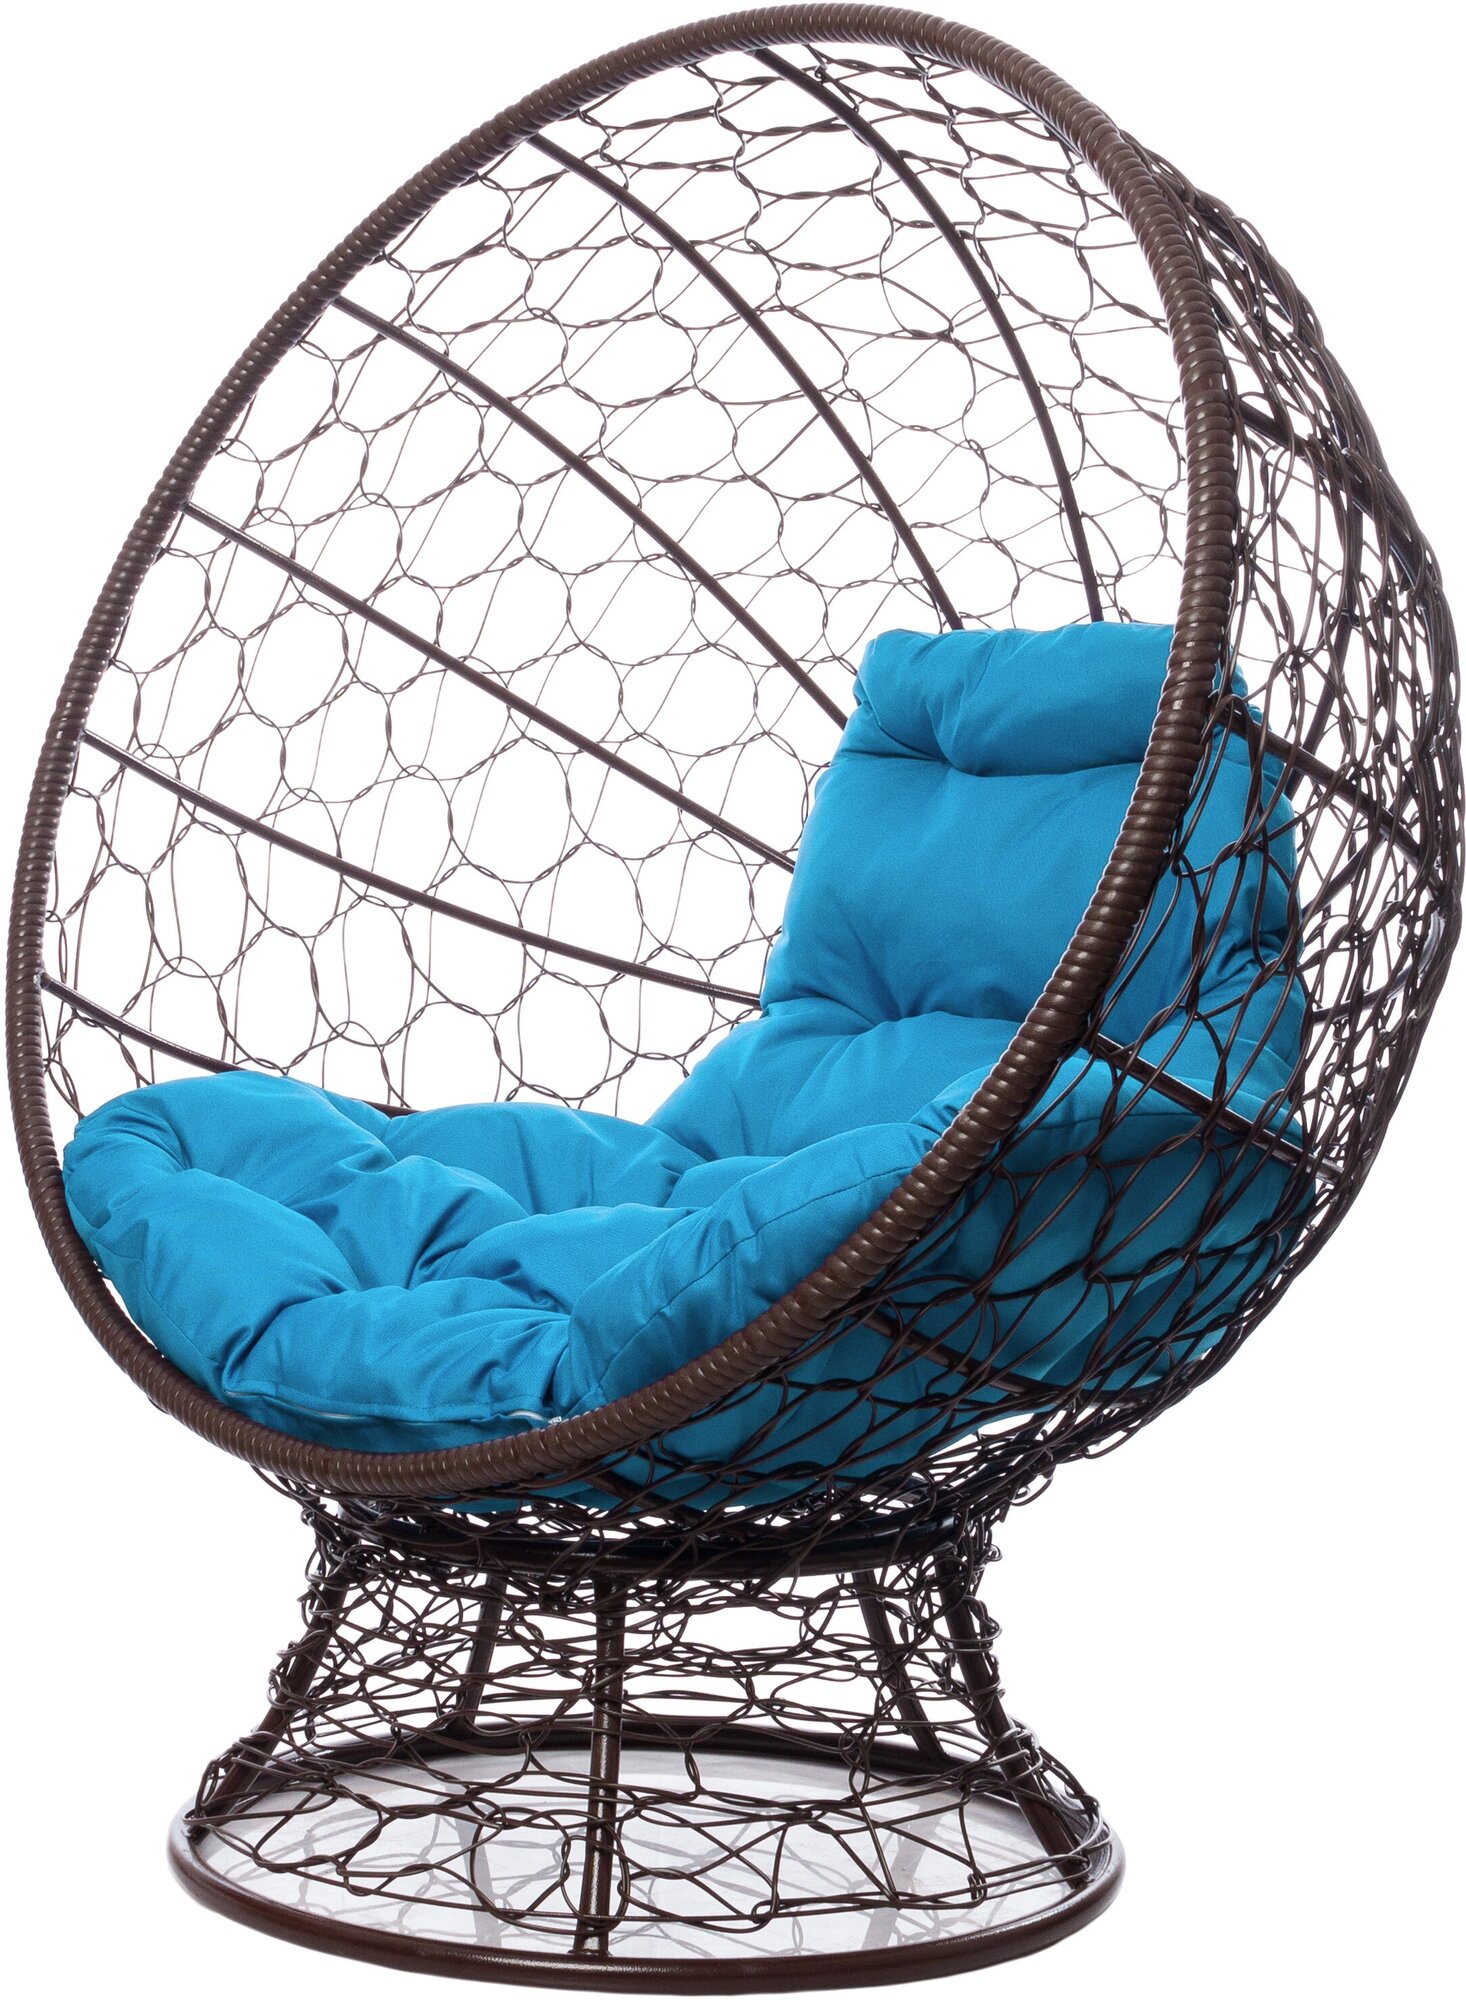 Кресло садовое M-Group Кокос на подставке ротанг коричневый 11590203 голубая подушка - фотография № 1